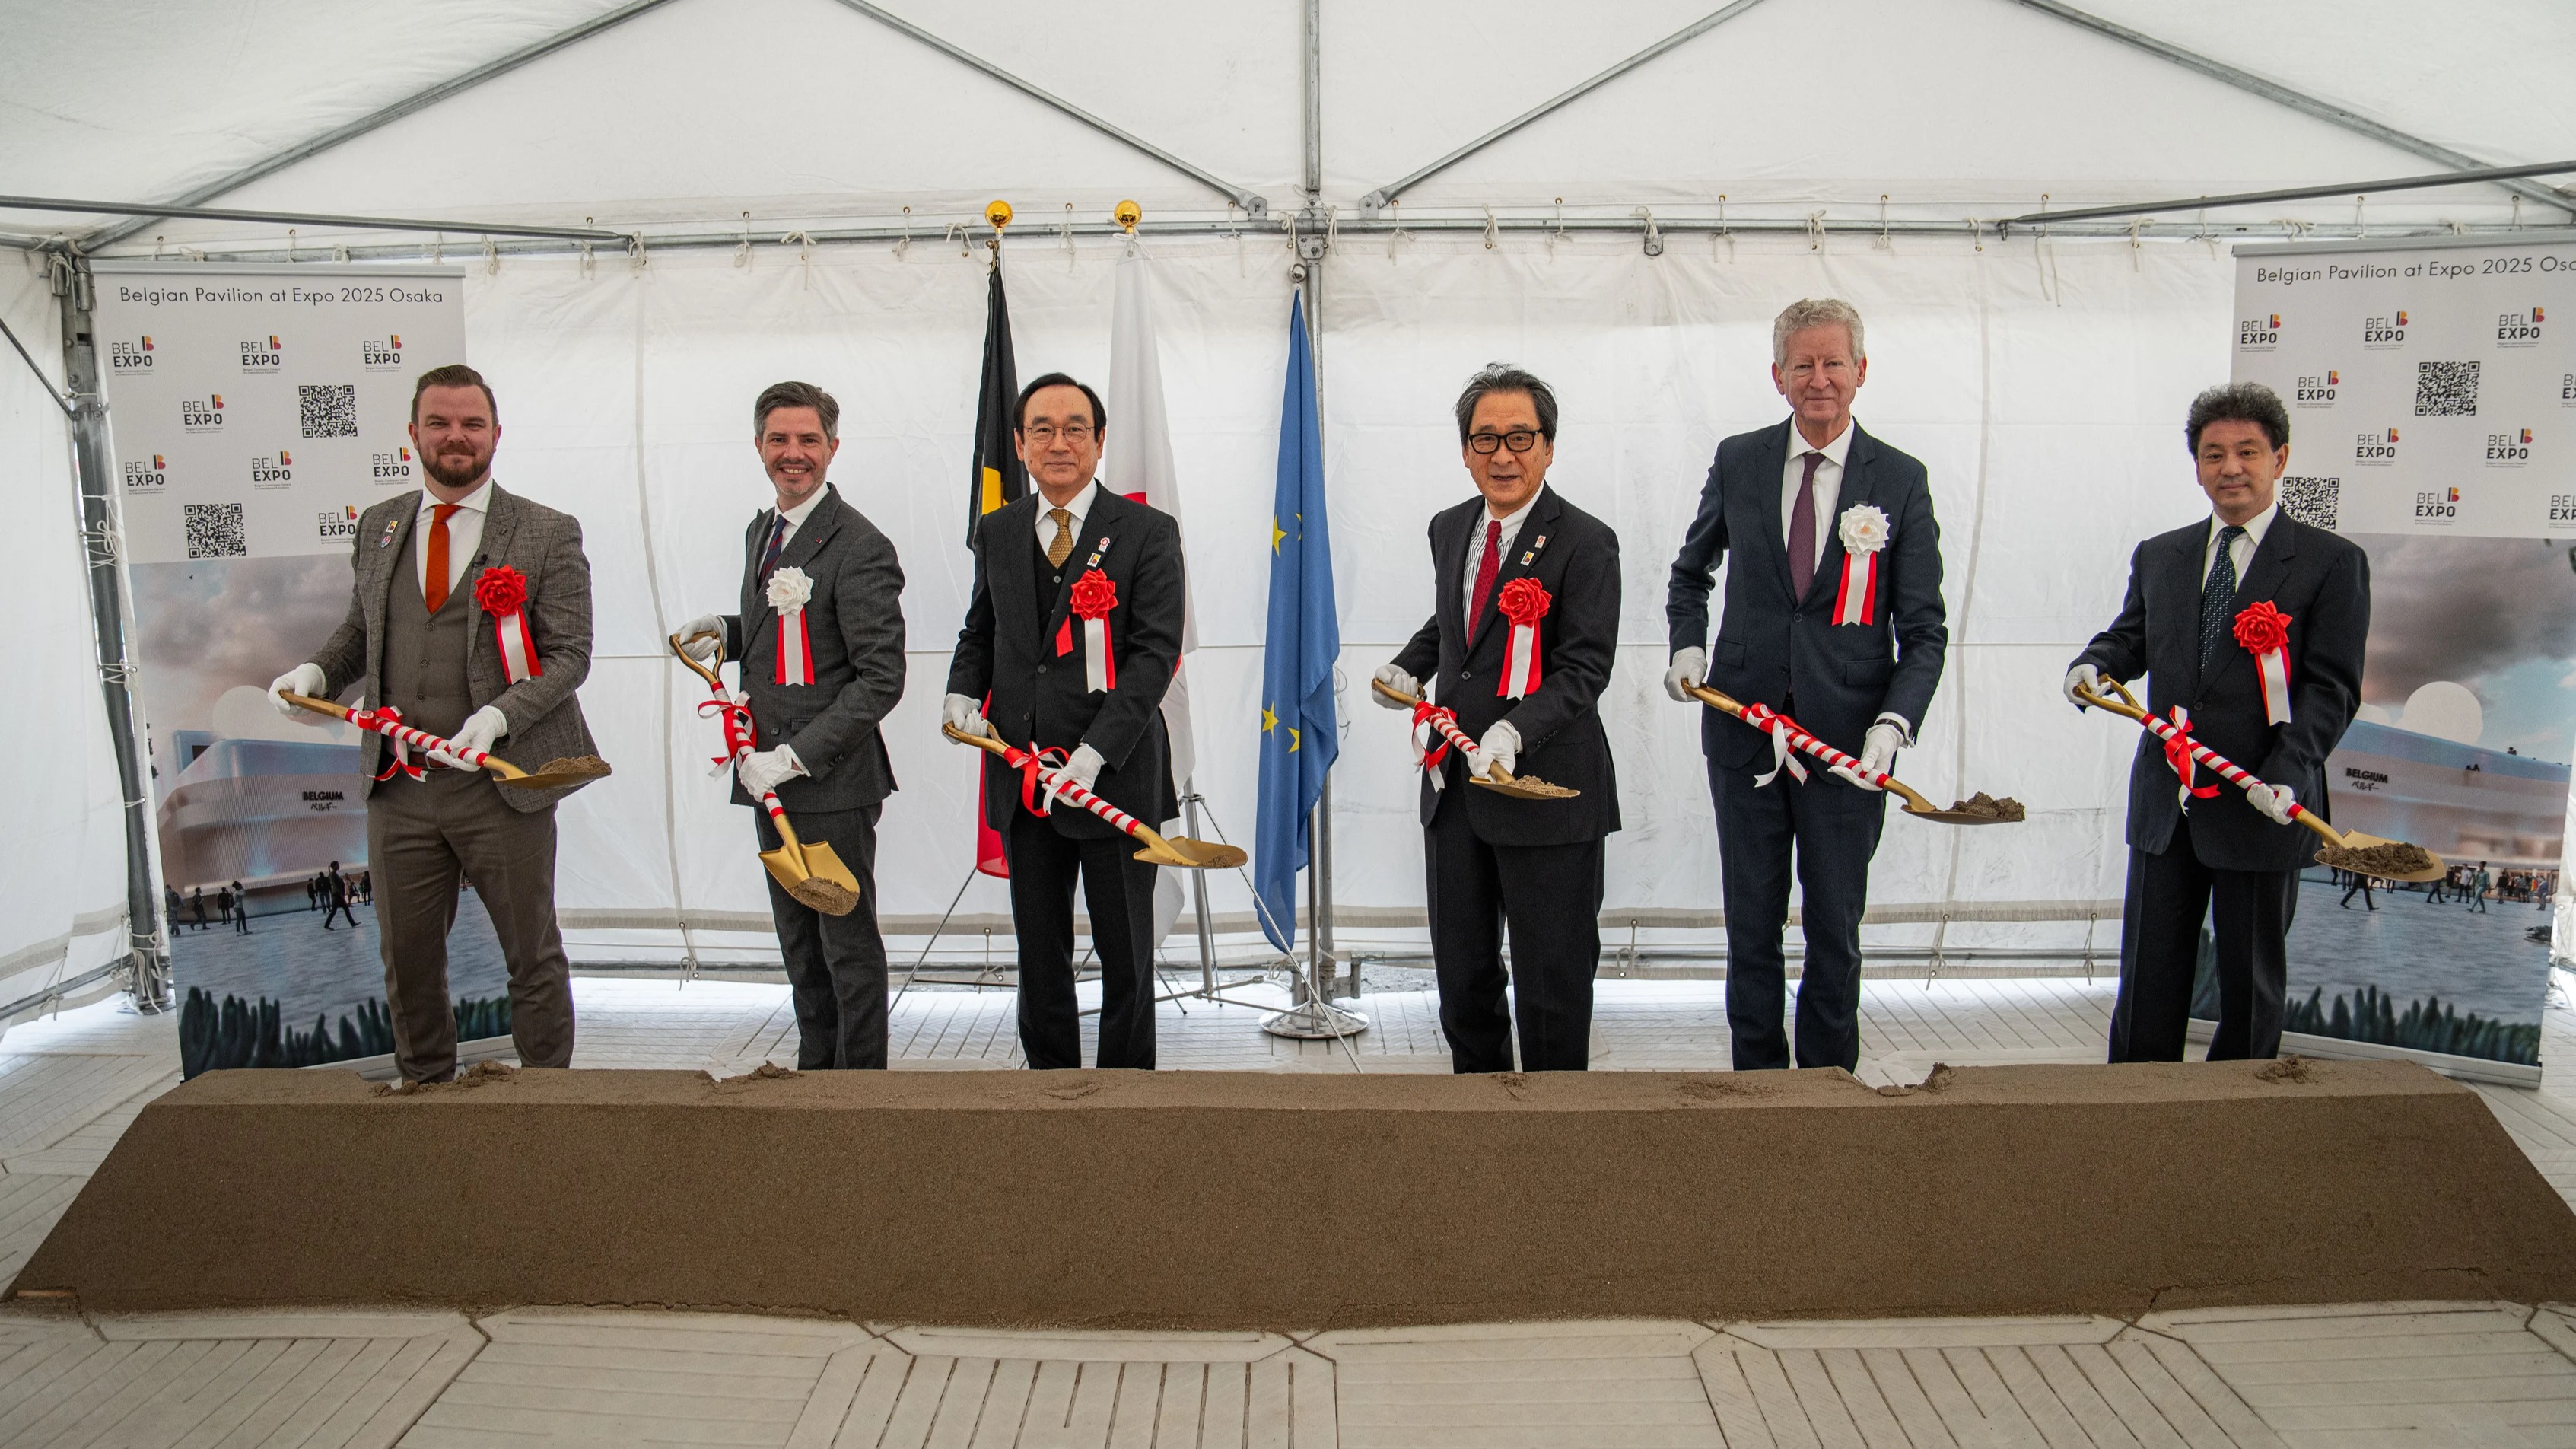 Eerste steenlegging van Belgische paviljoen op Expo 2025 Osaka